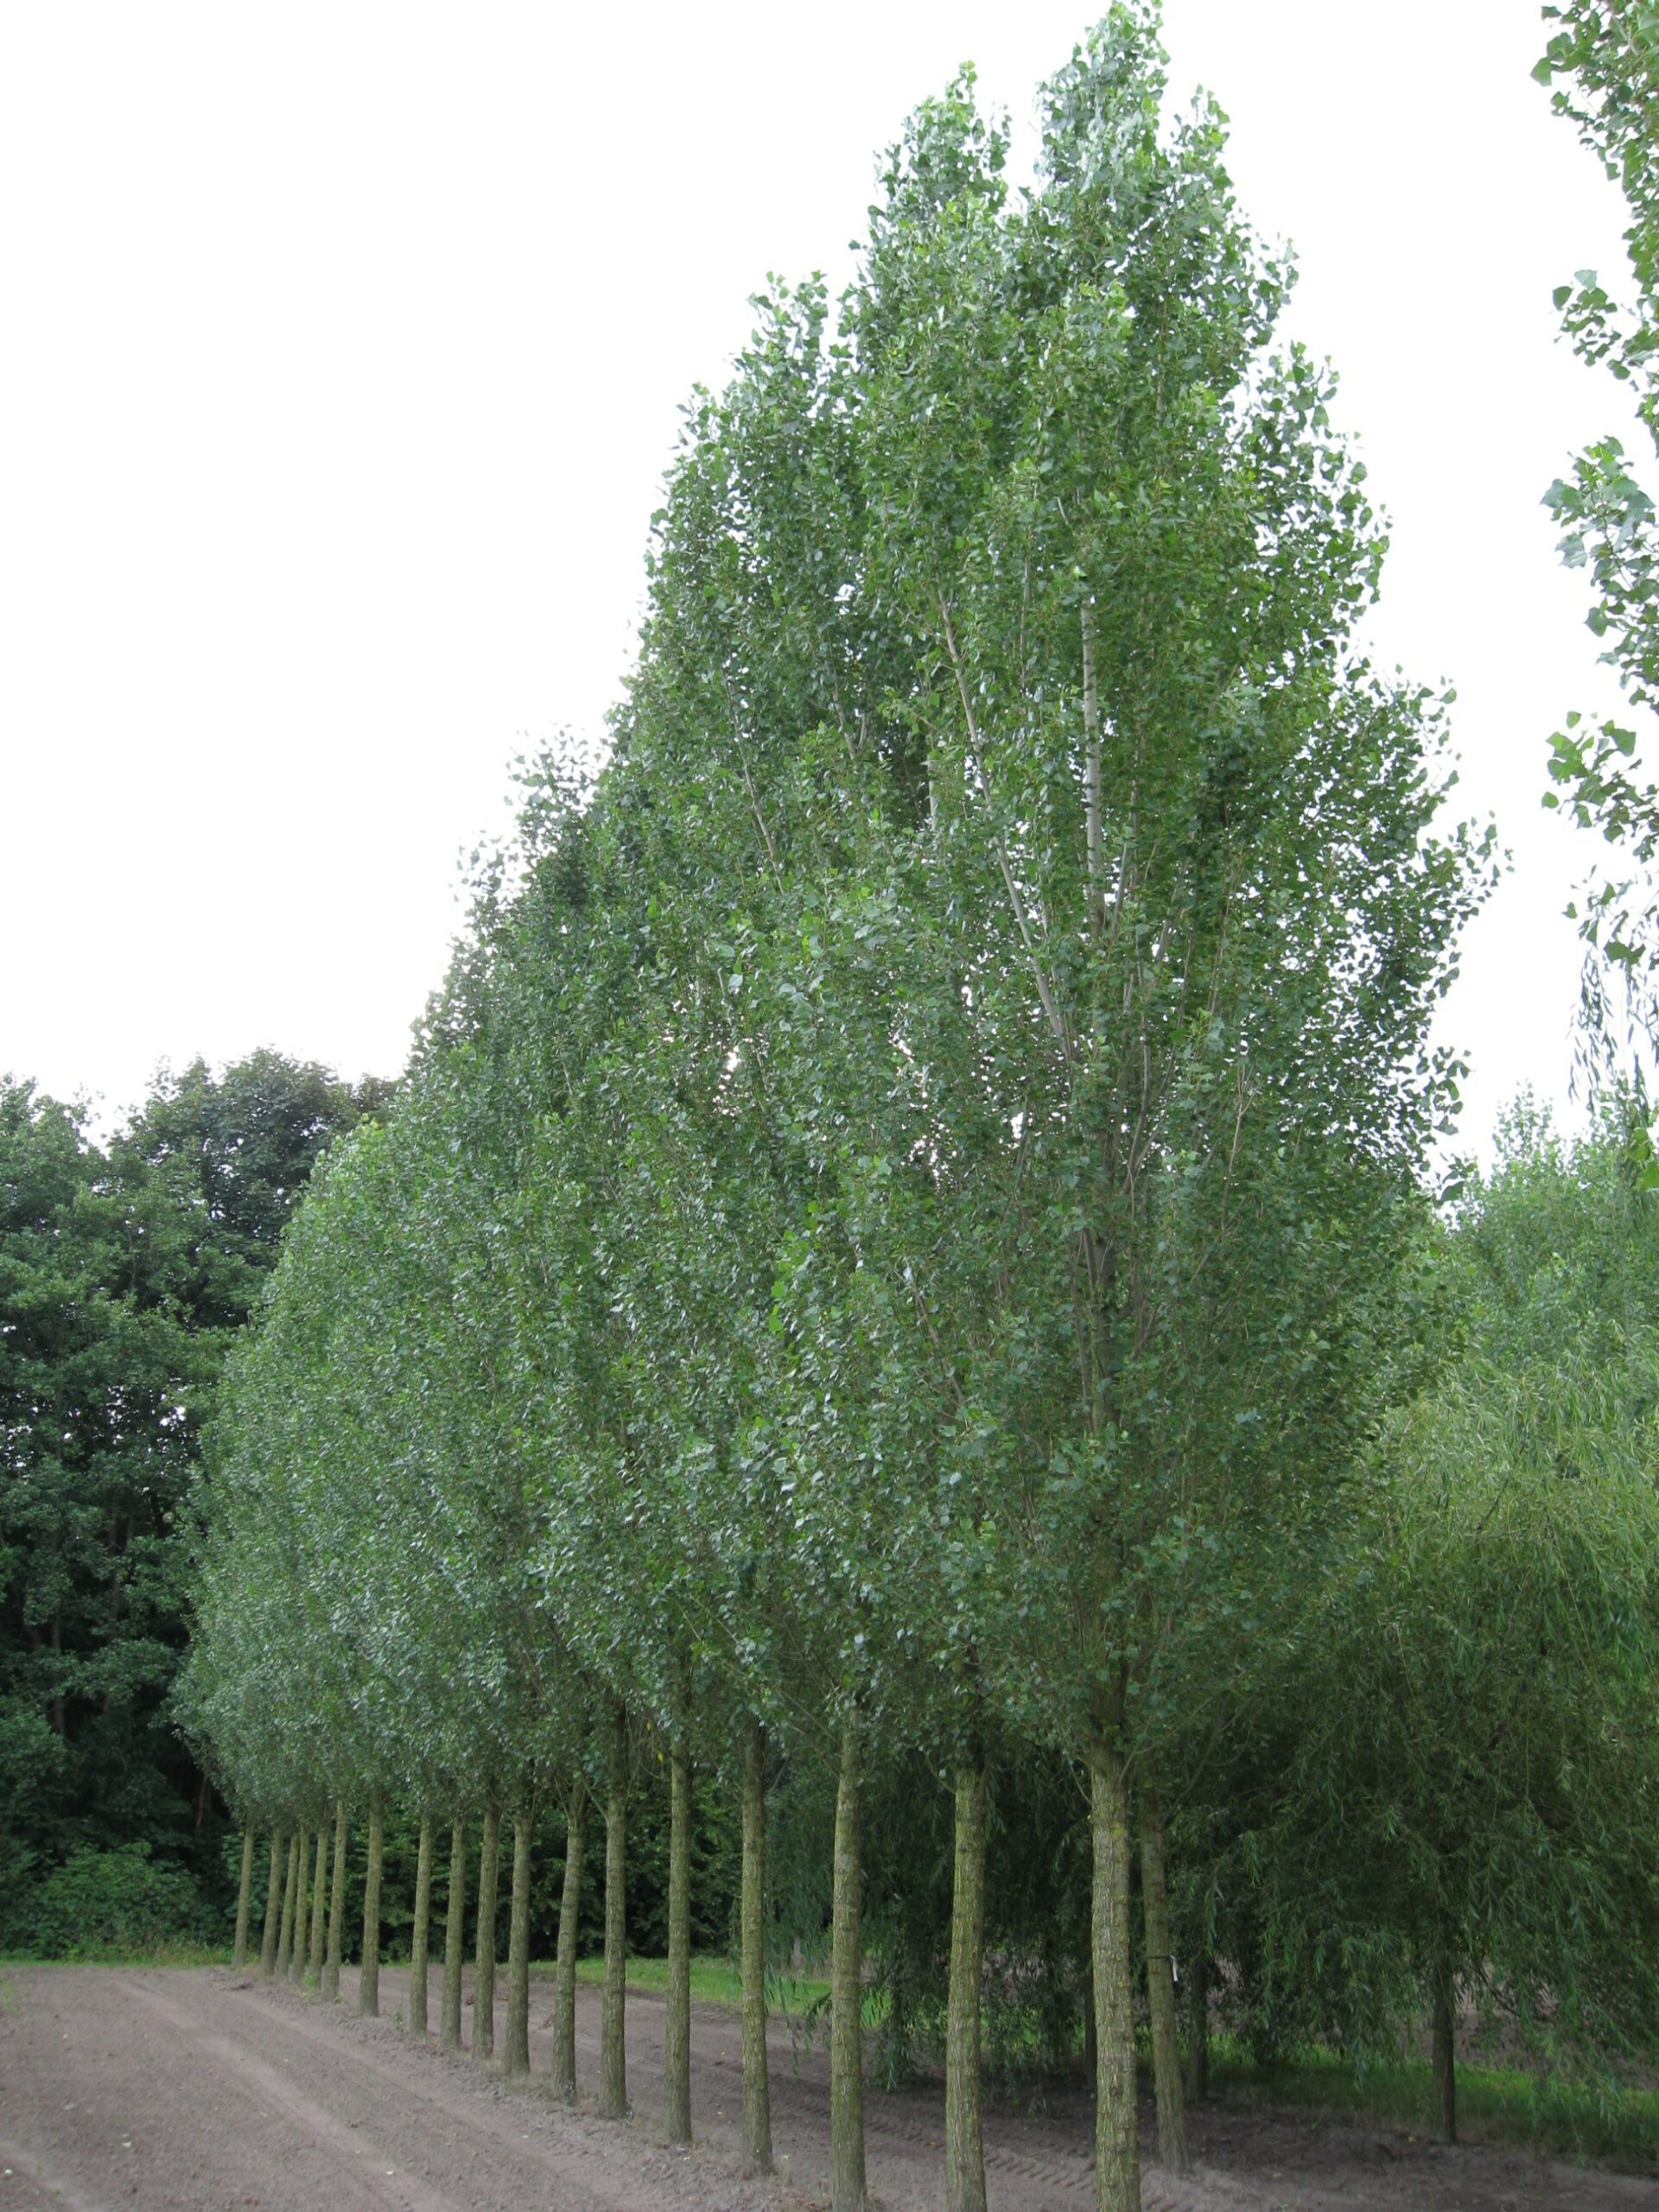 Populus nigra Italica semi mature trees growing in field